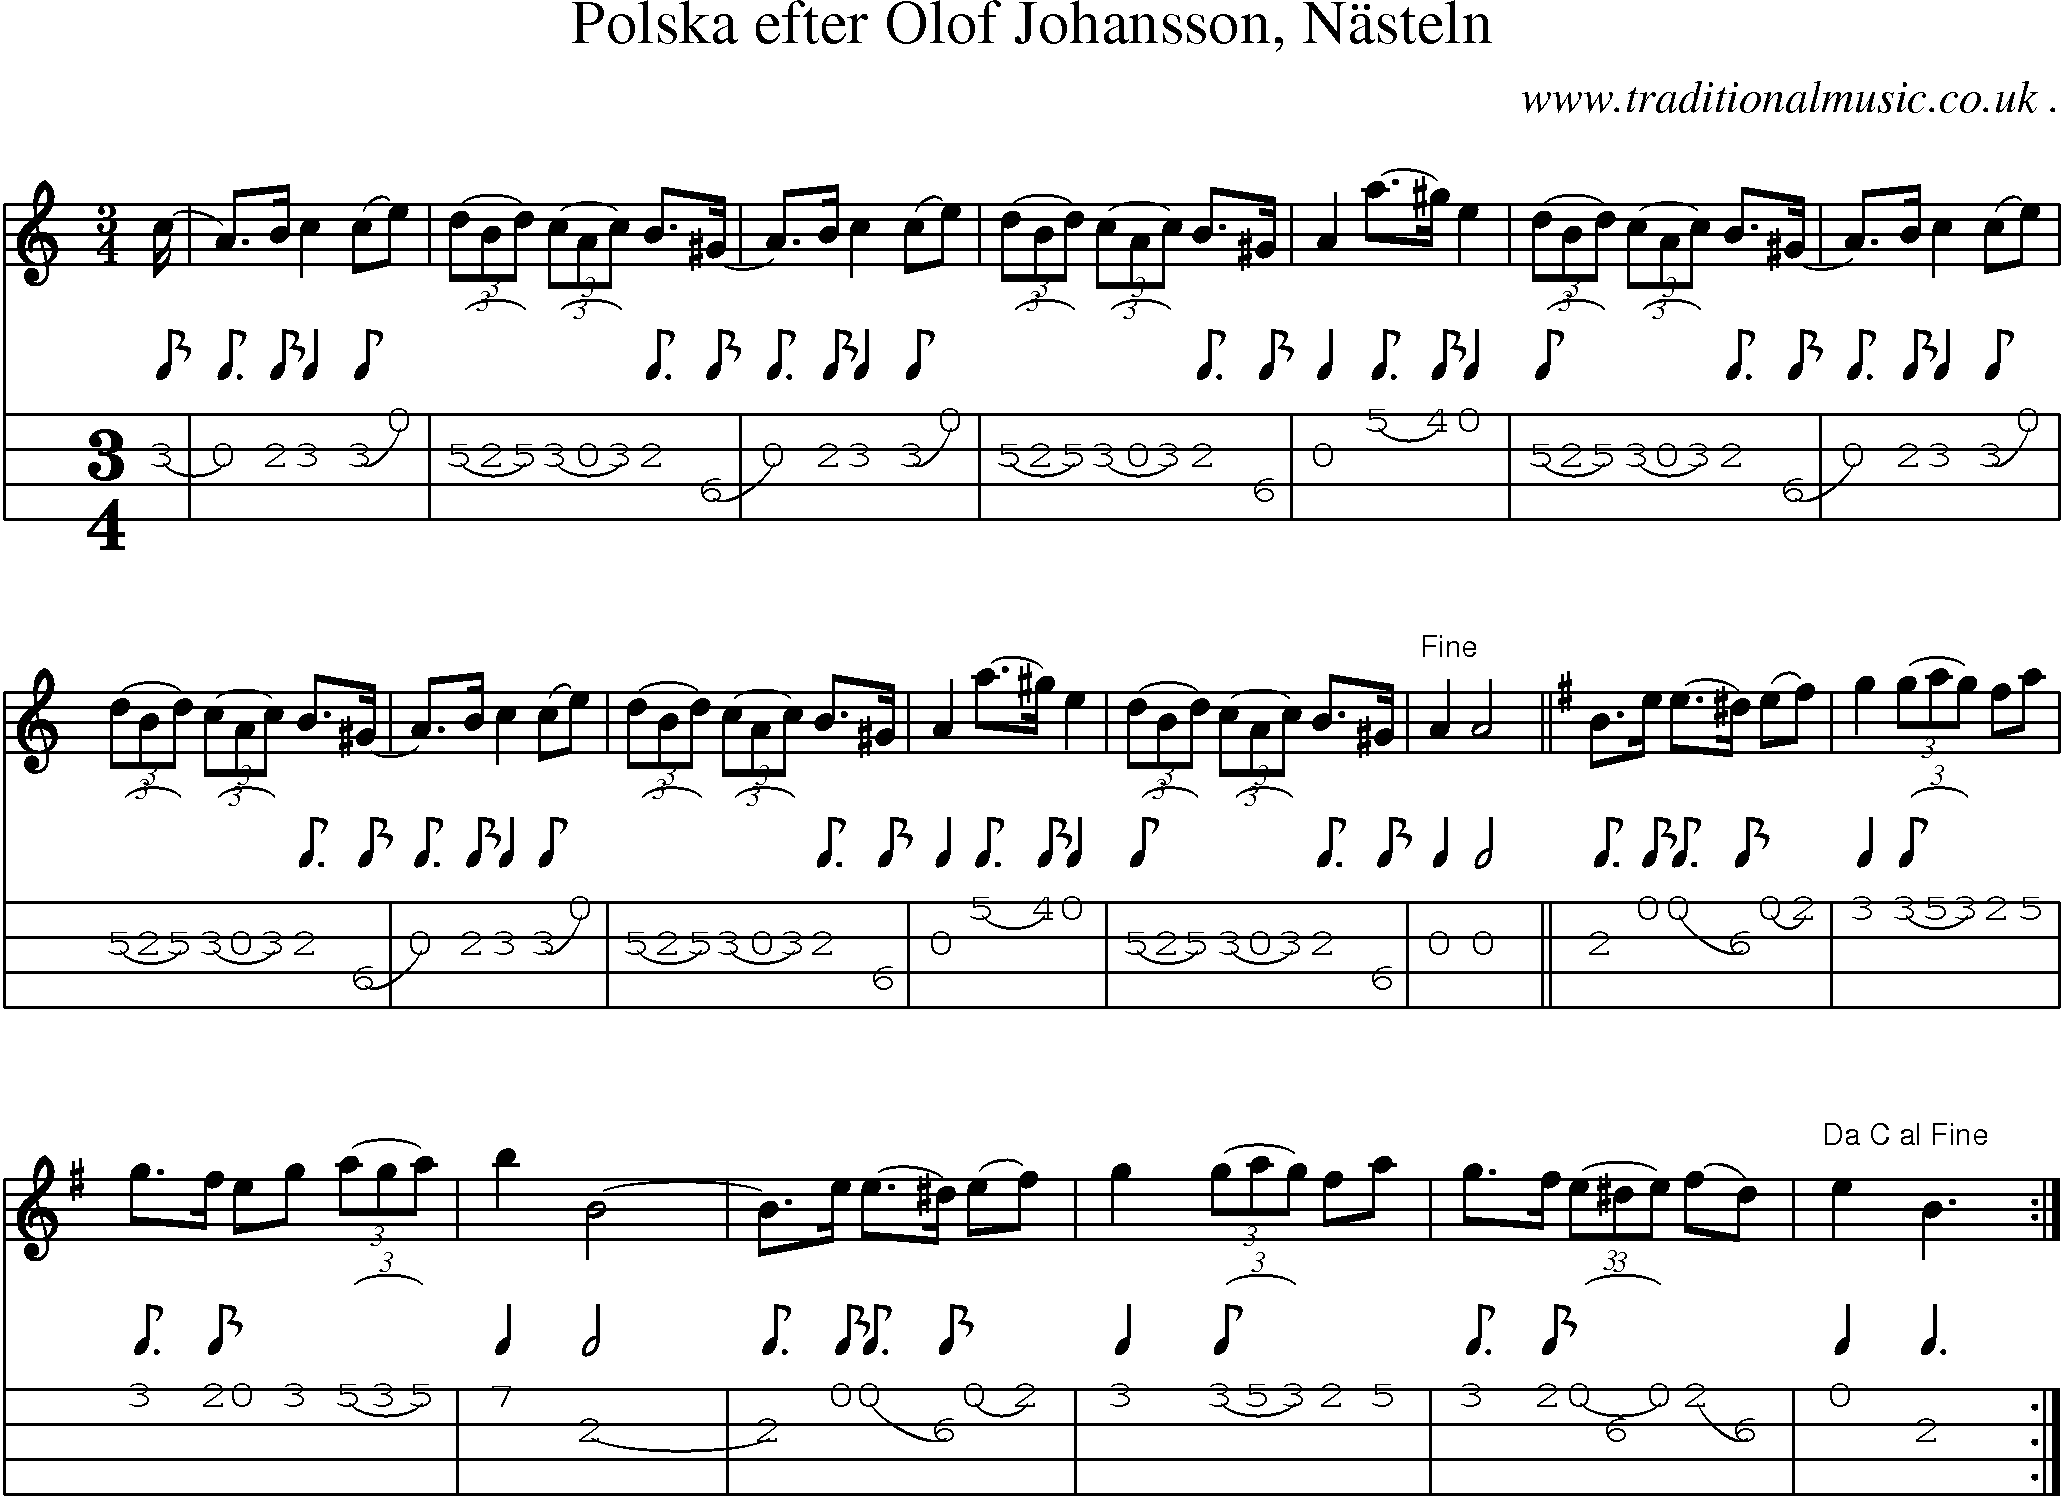 Sheet-Music and Mandolin Tabs for Polska Efter Olof Johansson Nasteln